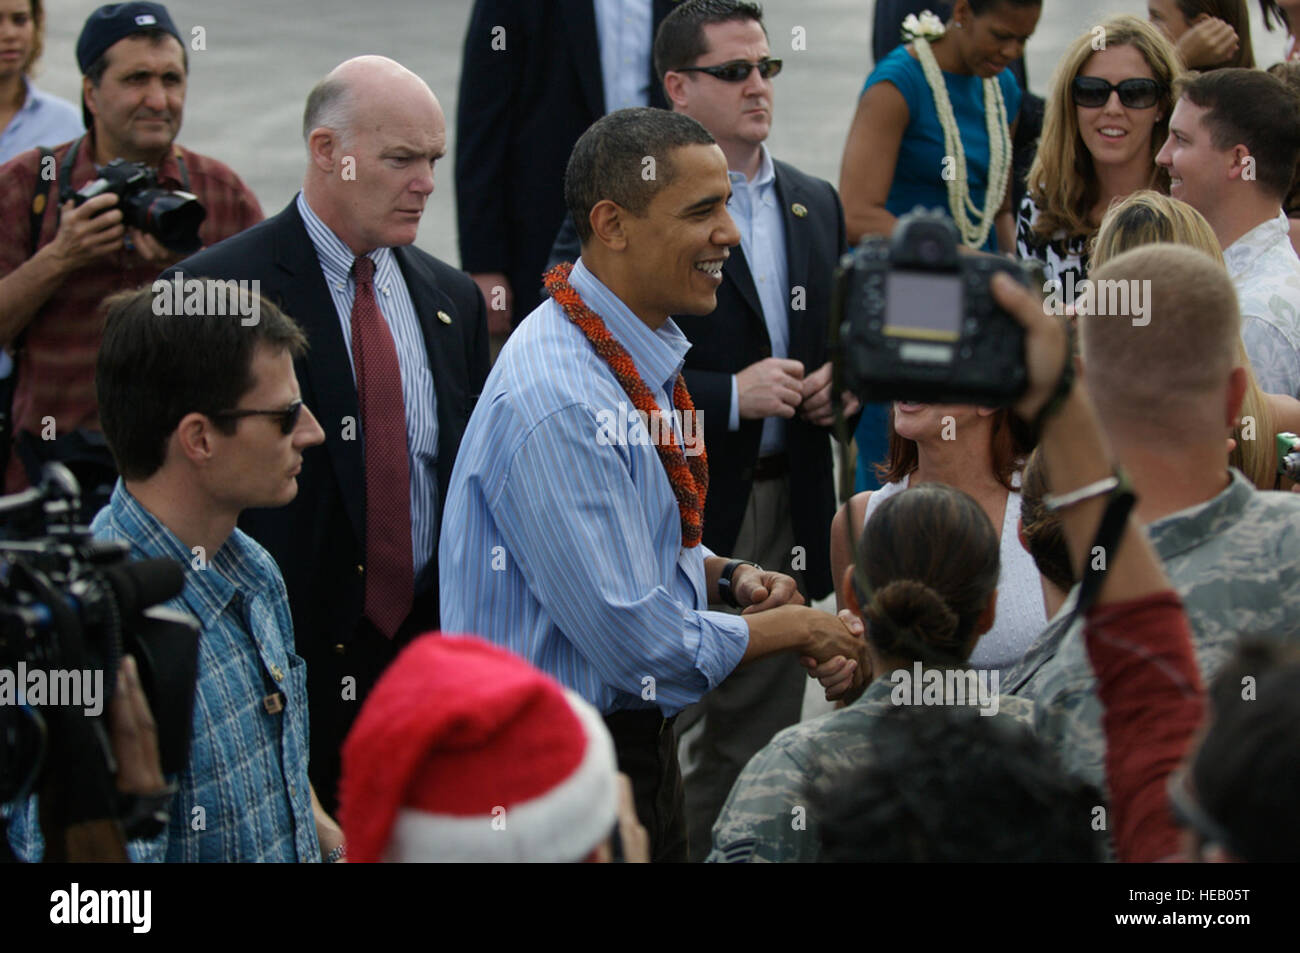 HICKAM AFB, -Präsident der Vereinigten Staaten Barack Obama wird von Soldaten und deren Familien bei seiner Ankunft zu Hickam AFB, Hawaii am 24. Dez. begrüßt. Präsident Obama ist ein Eingeborener von Hawaii nach Hause für den Urlaub.  U.S.  Air Force Tech Sgt. Cohen A. Young) Stockfoto